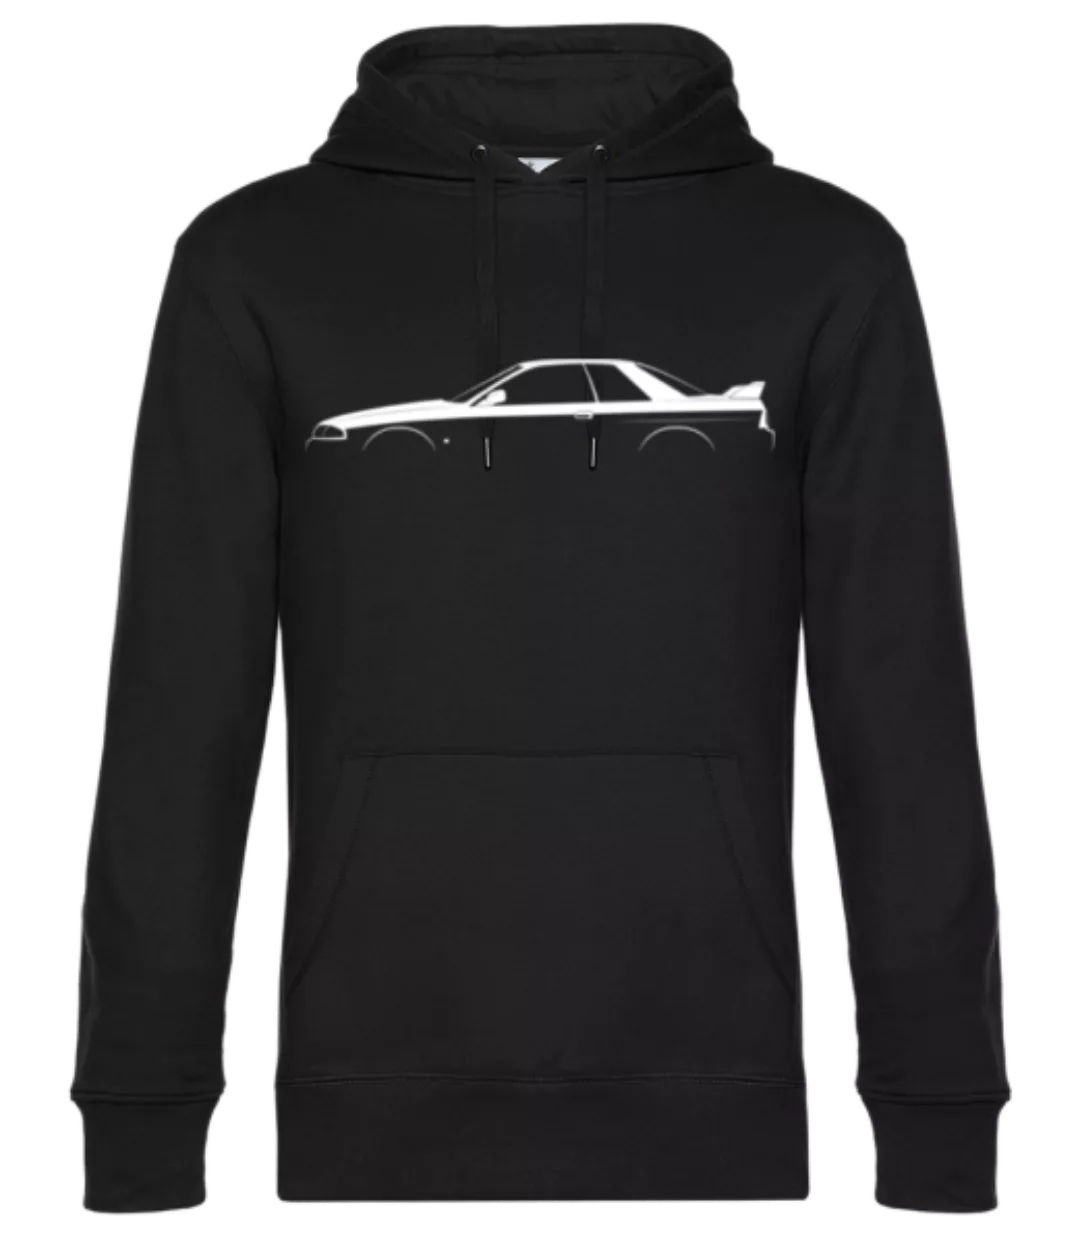 'Nissan Skyline GT-R (R32)' Silhouette · Unisex Premium Hoodie günstig online kaufen